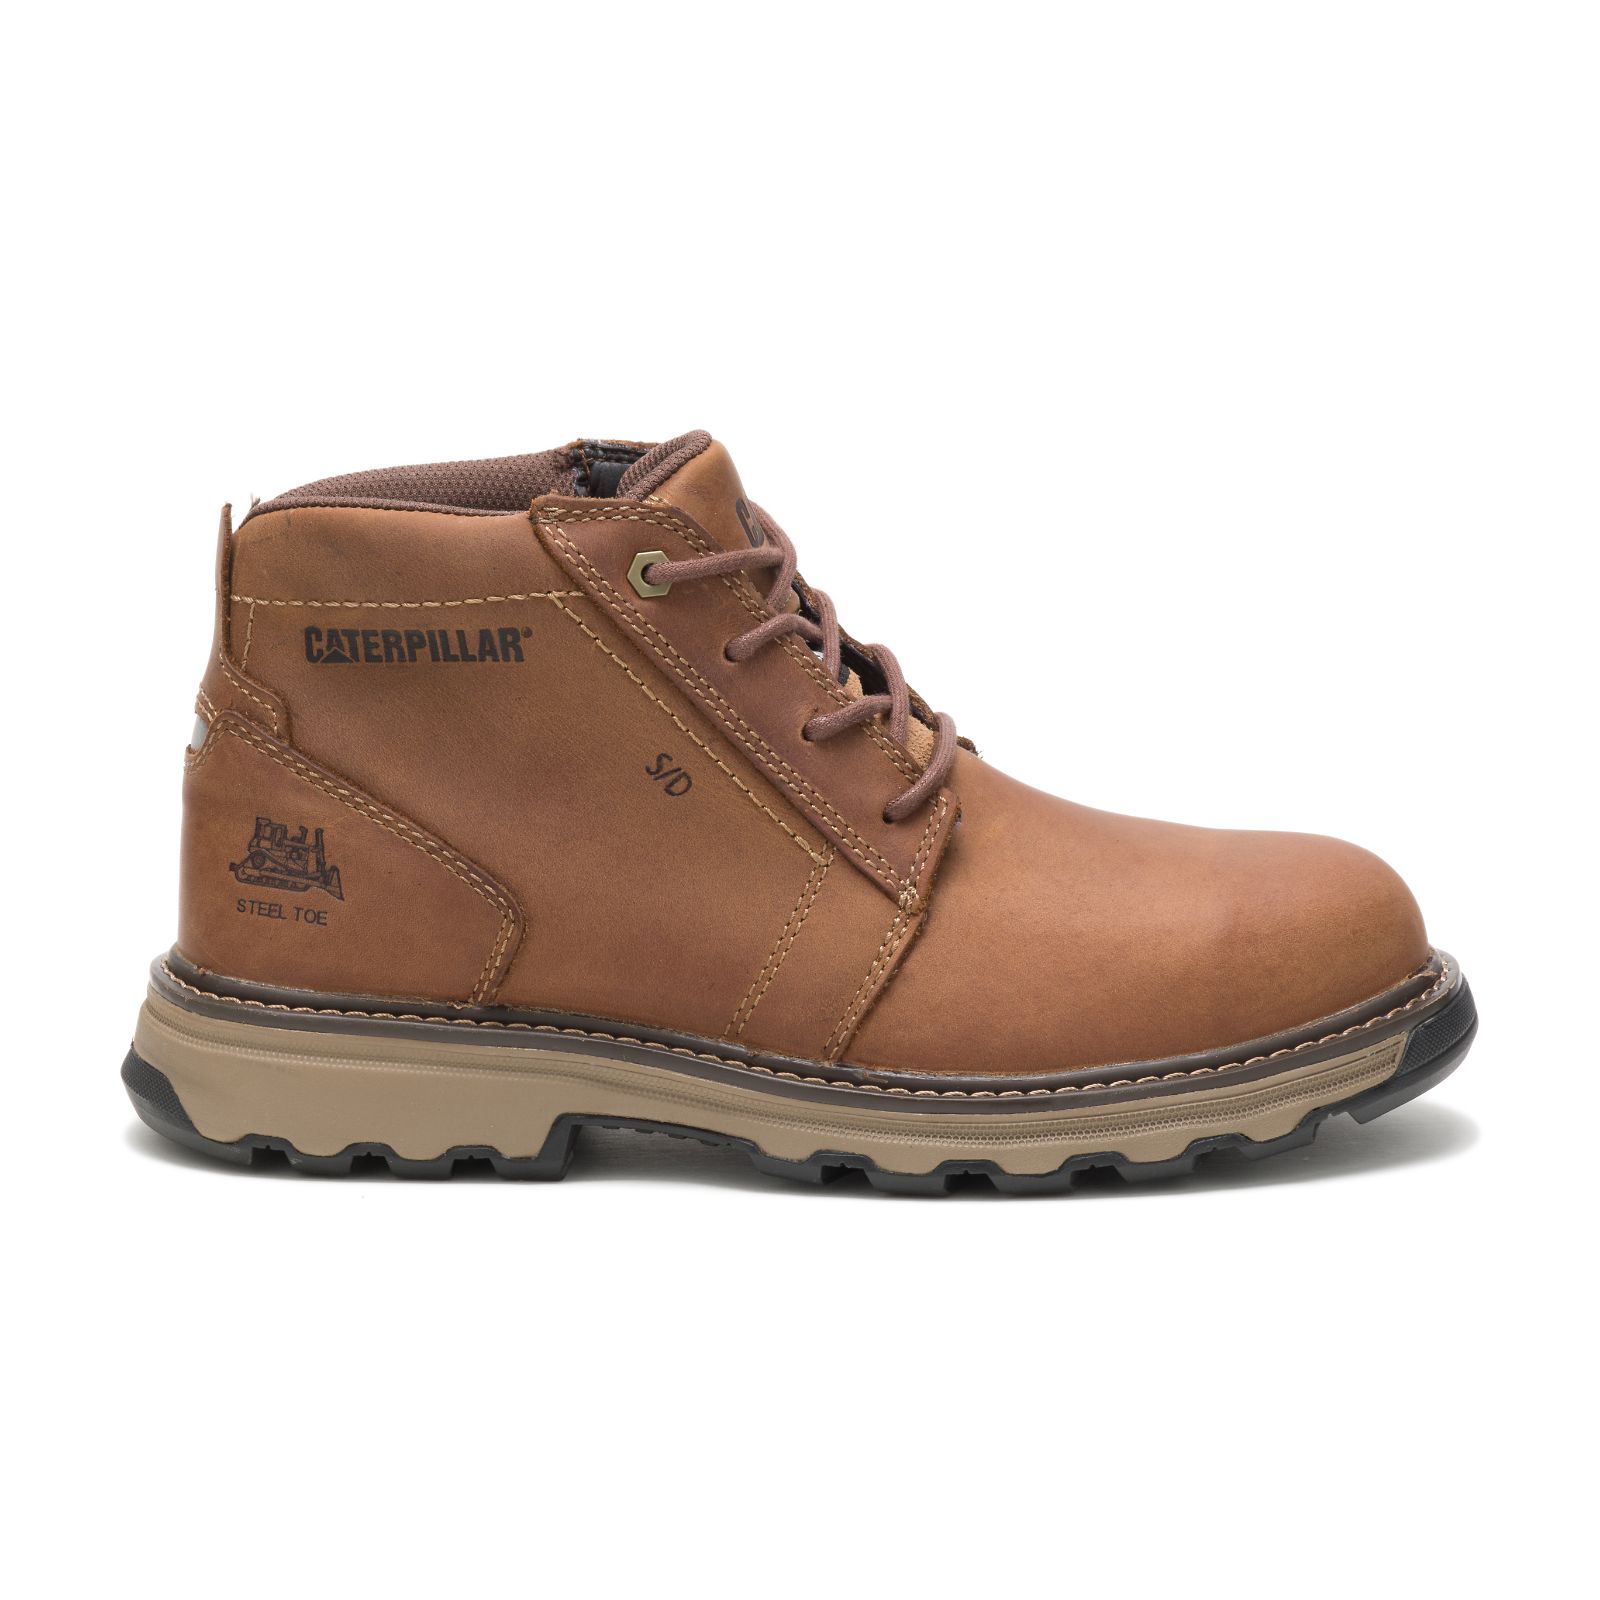 Caterpillar Parker Steel Toe - Mens Steel Toe Boots - Dark Beige - NZ (983ODYUWM)